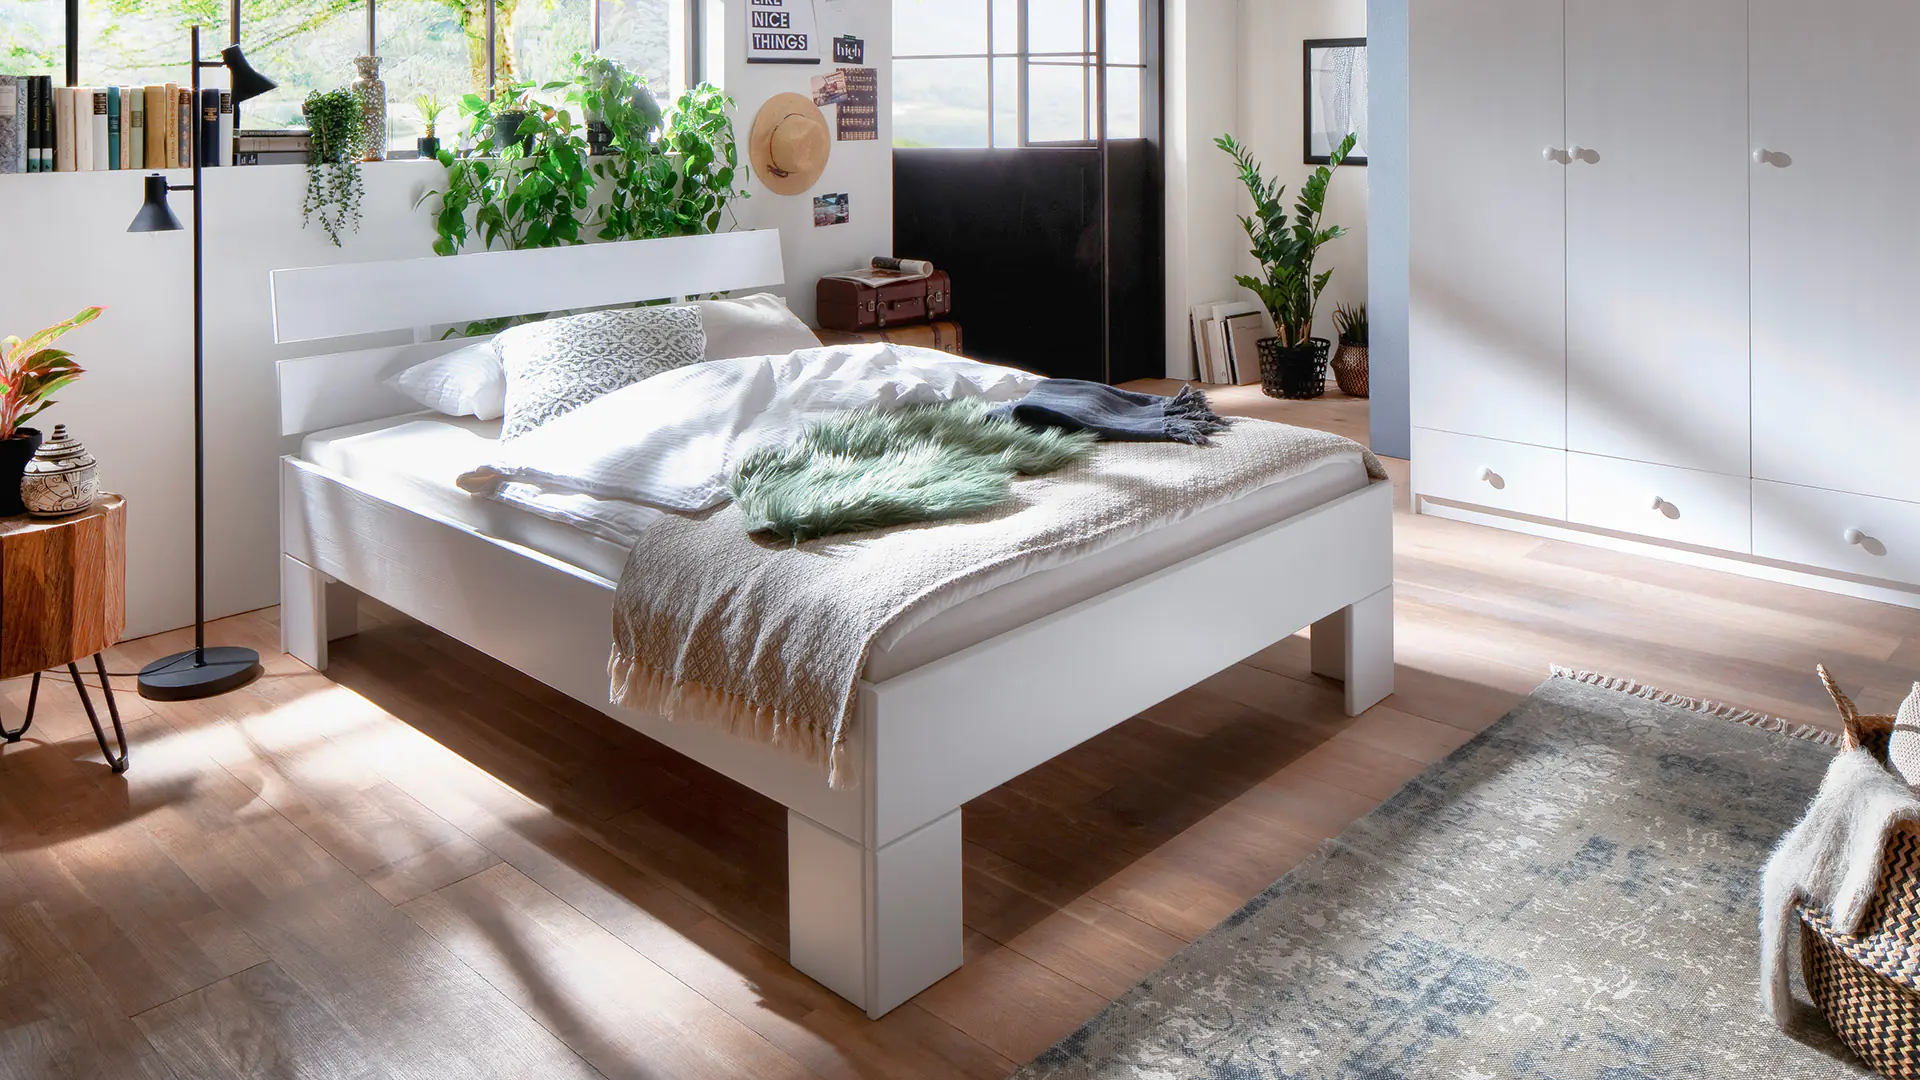 Modernes Jugendbett in frischem Weiß mit markanten Winkelfüßen